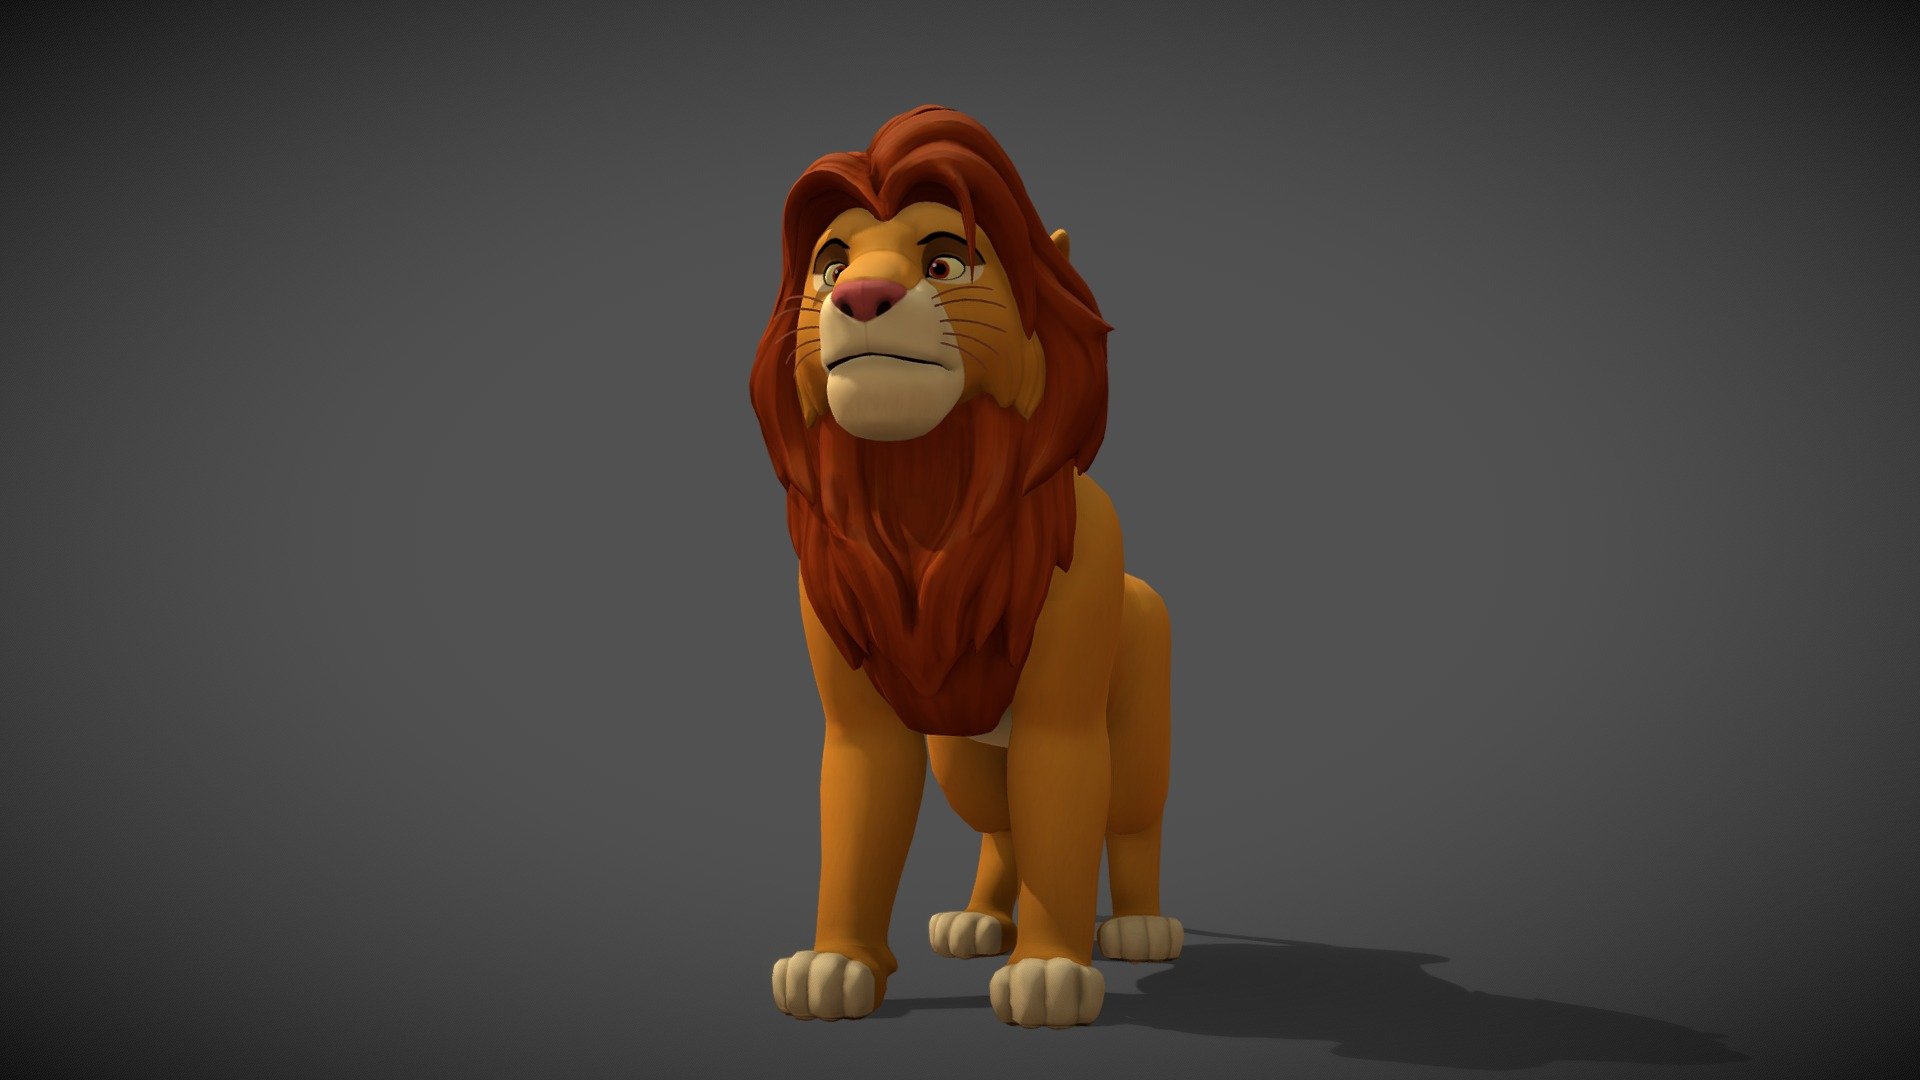 라이온킹 _ 심바
The Lion King simba_Adult Ver 3d model